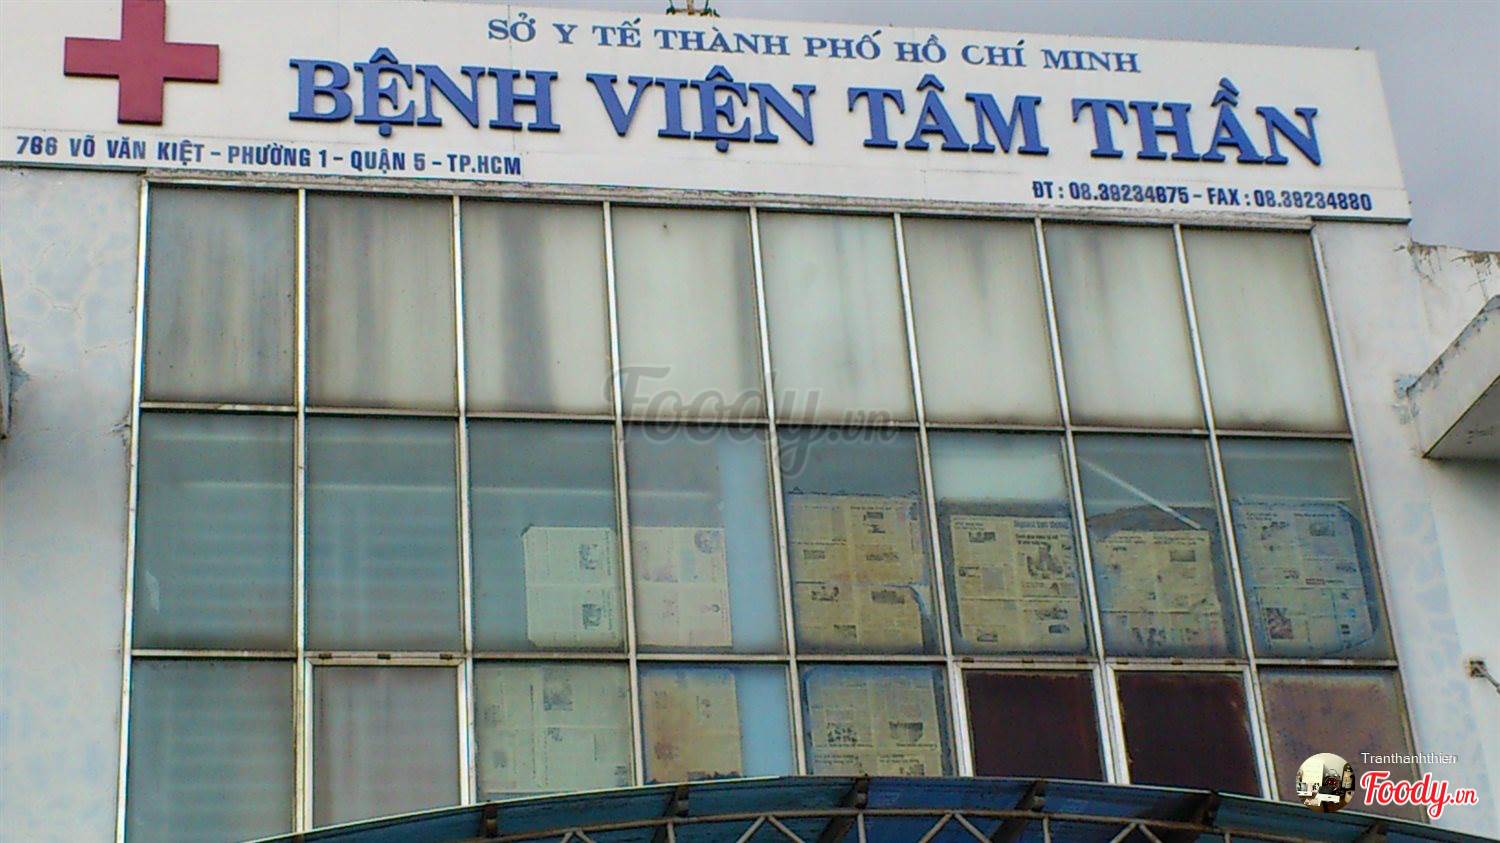 Bệnh Viện Tâm Thần Tp.Hcm - 766 Võ Văn Kiệt, Phường 1, Quận 5, Hồ Chí Minh